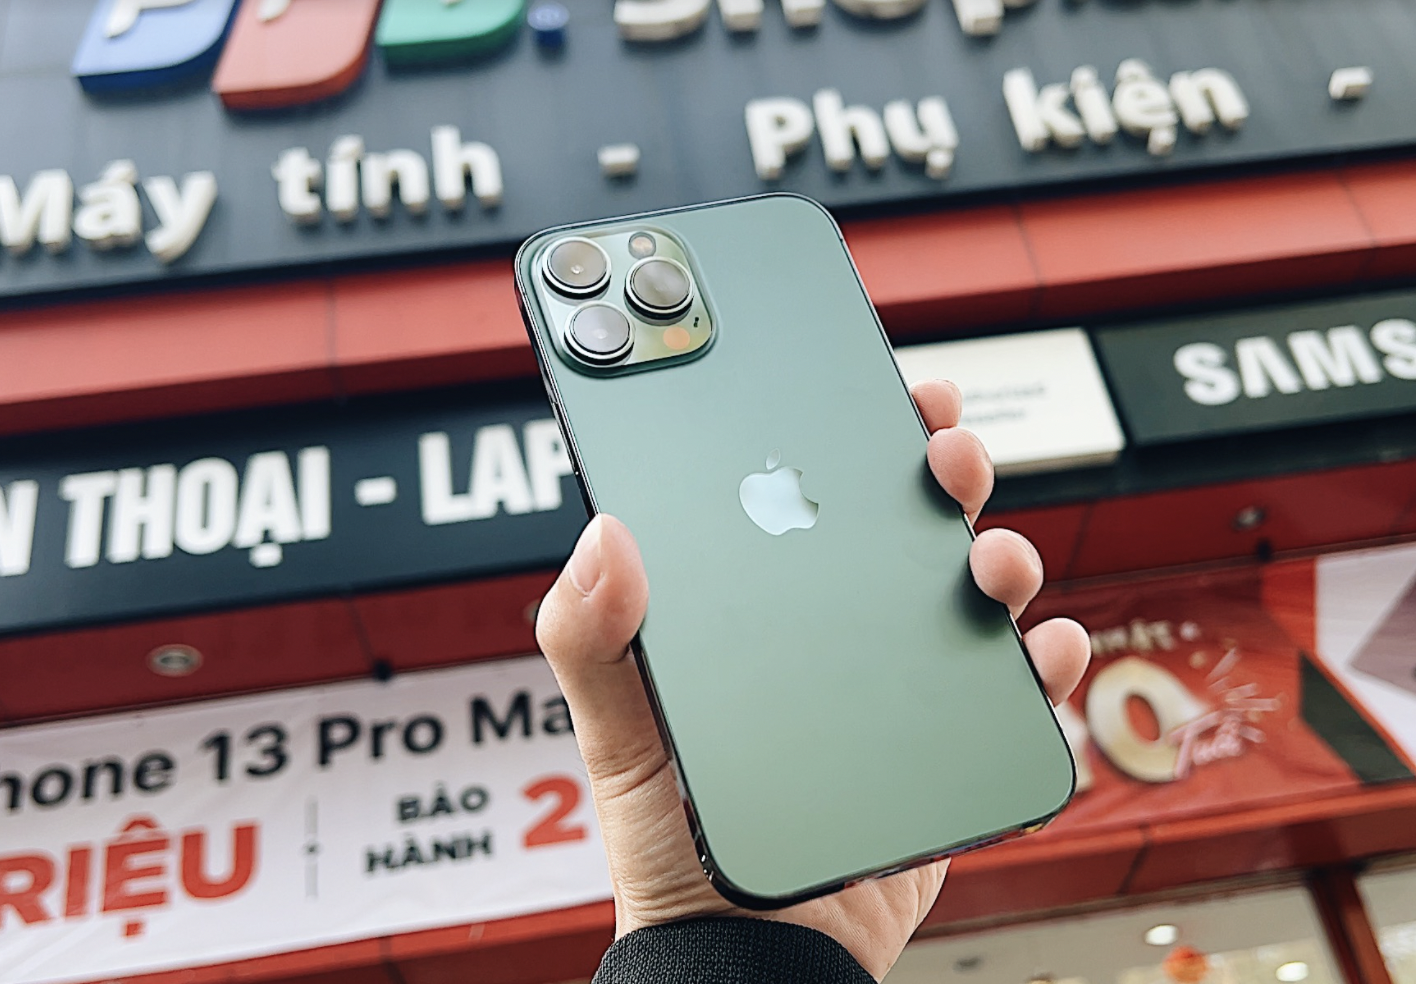 iPhone 13 màu xanh: Phiên bản iPhone mới nhất - phiên bản iPhone 13 màu xanh sắc nét và tươi sáng đang là một trong những sản phẩm được mong đợi nhất của năm. Với một loạt tính năng mới như camera cải tiến, hiệu suất nhanh hơn và vỏ bên ngoài mạnh mẽ, iPhone 13 màu xanh sẽ là một lựa chọn tuyệt vời cho bất kỳ ai đang tìm kiếm một chiếc điện thoại thông minh đẳng cấp.